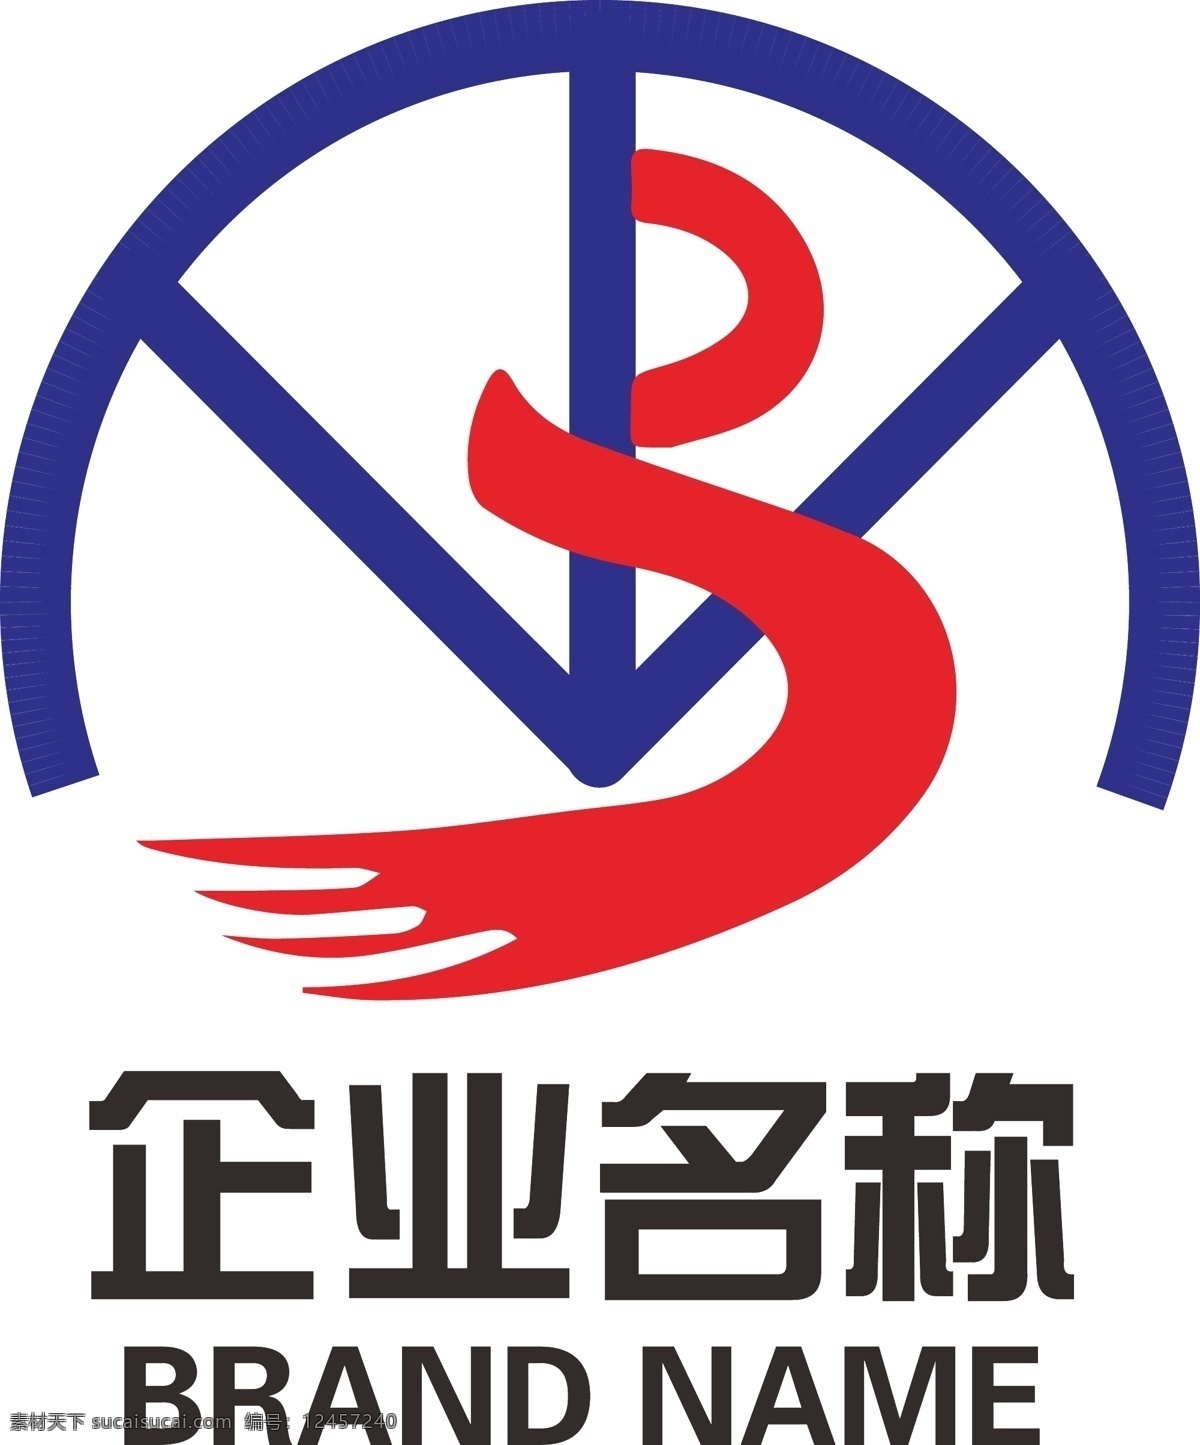 公司 logo 标志设计 金融logo 企业logo 税务logo 银行logo 保险logo 理财logo 货币logo 信用 经济logo